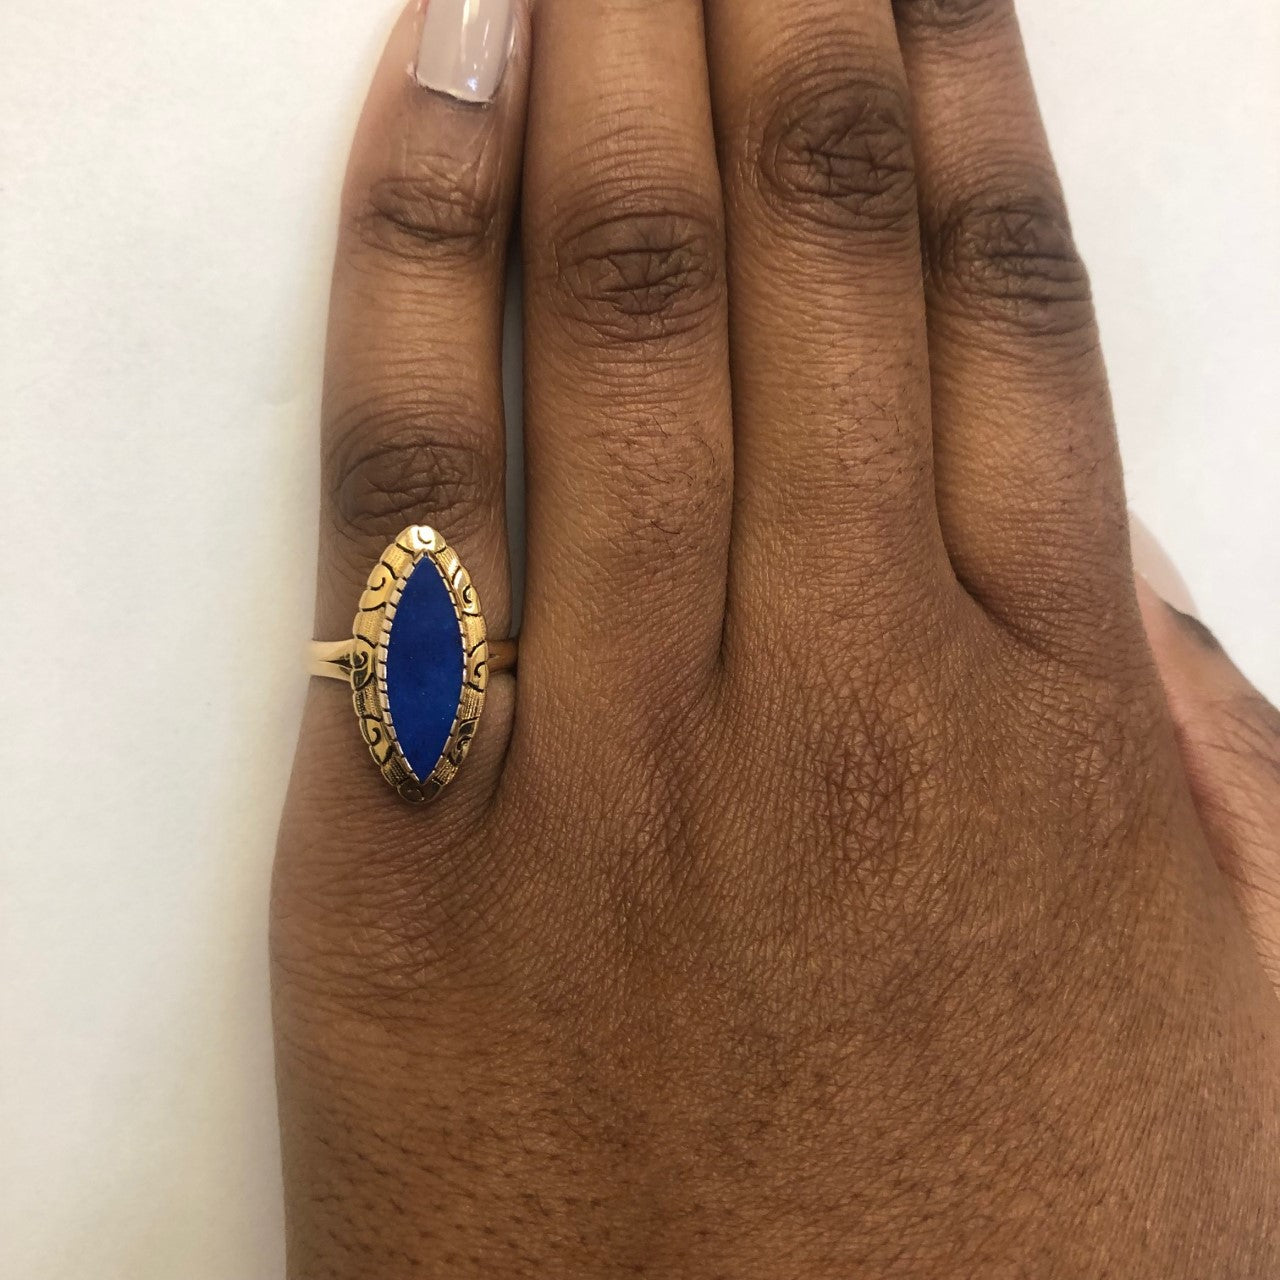 Bezel Set Marquise Lapis Lazuli Ring | 2.00ct | SZ 7 |